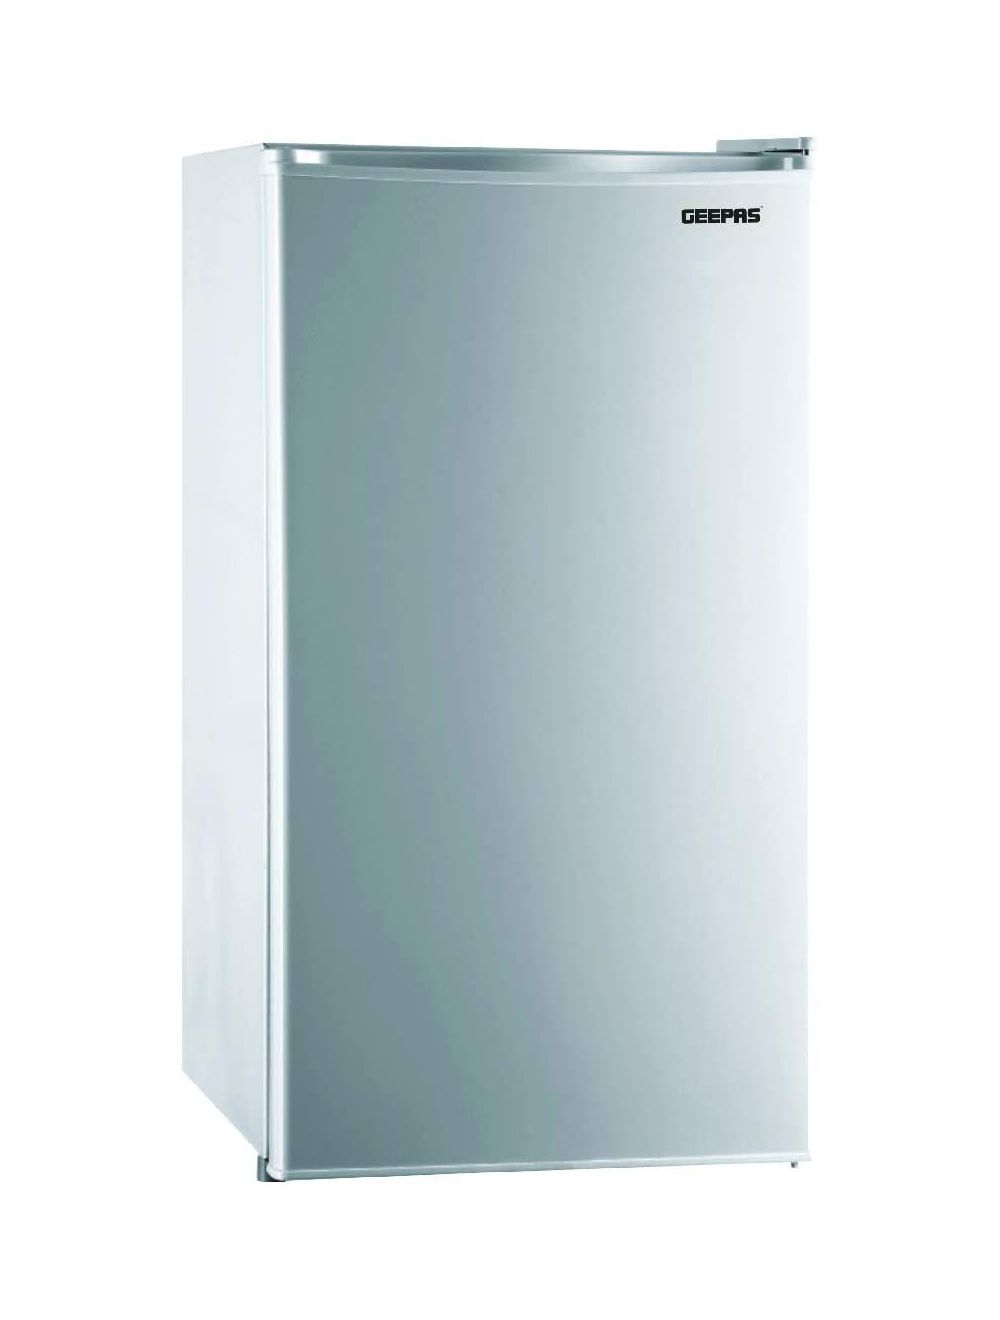 Geepas GRF119SPE Single Door Defrost Refrigerator, 110L